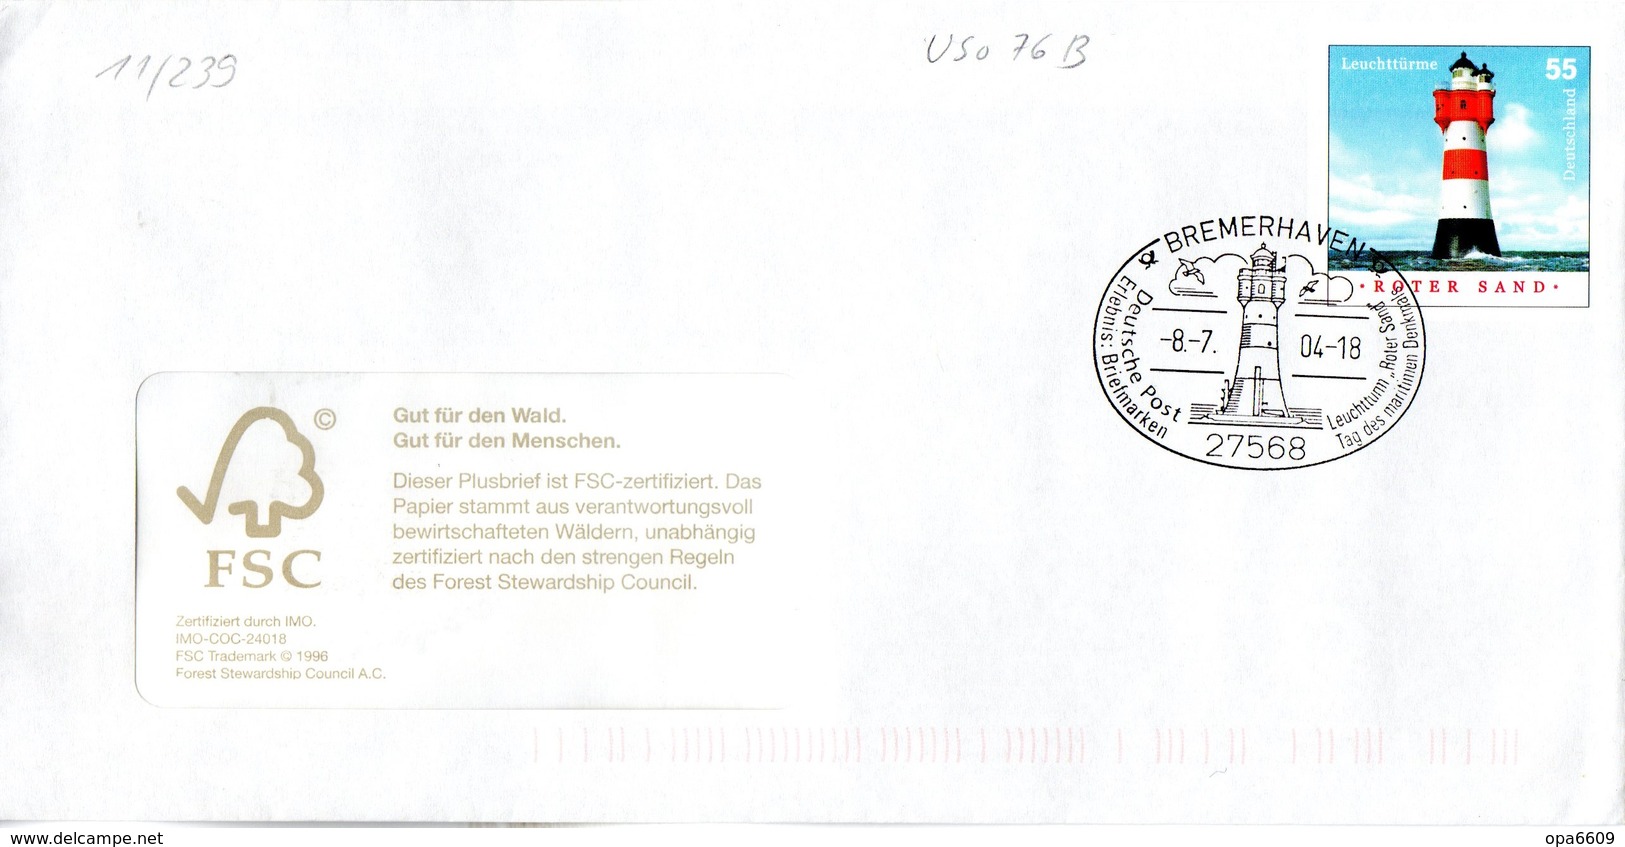 BRD Amtl.GZS-Umschlag (Langformat) USo 76B ,WSt 55(C) "Leuchtturm Roter Sand" ESSt 8.7.2004 BREMERHAVEN - Umschläge - Gebraucht